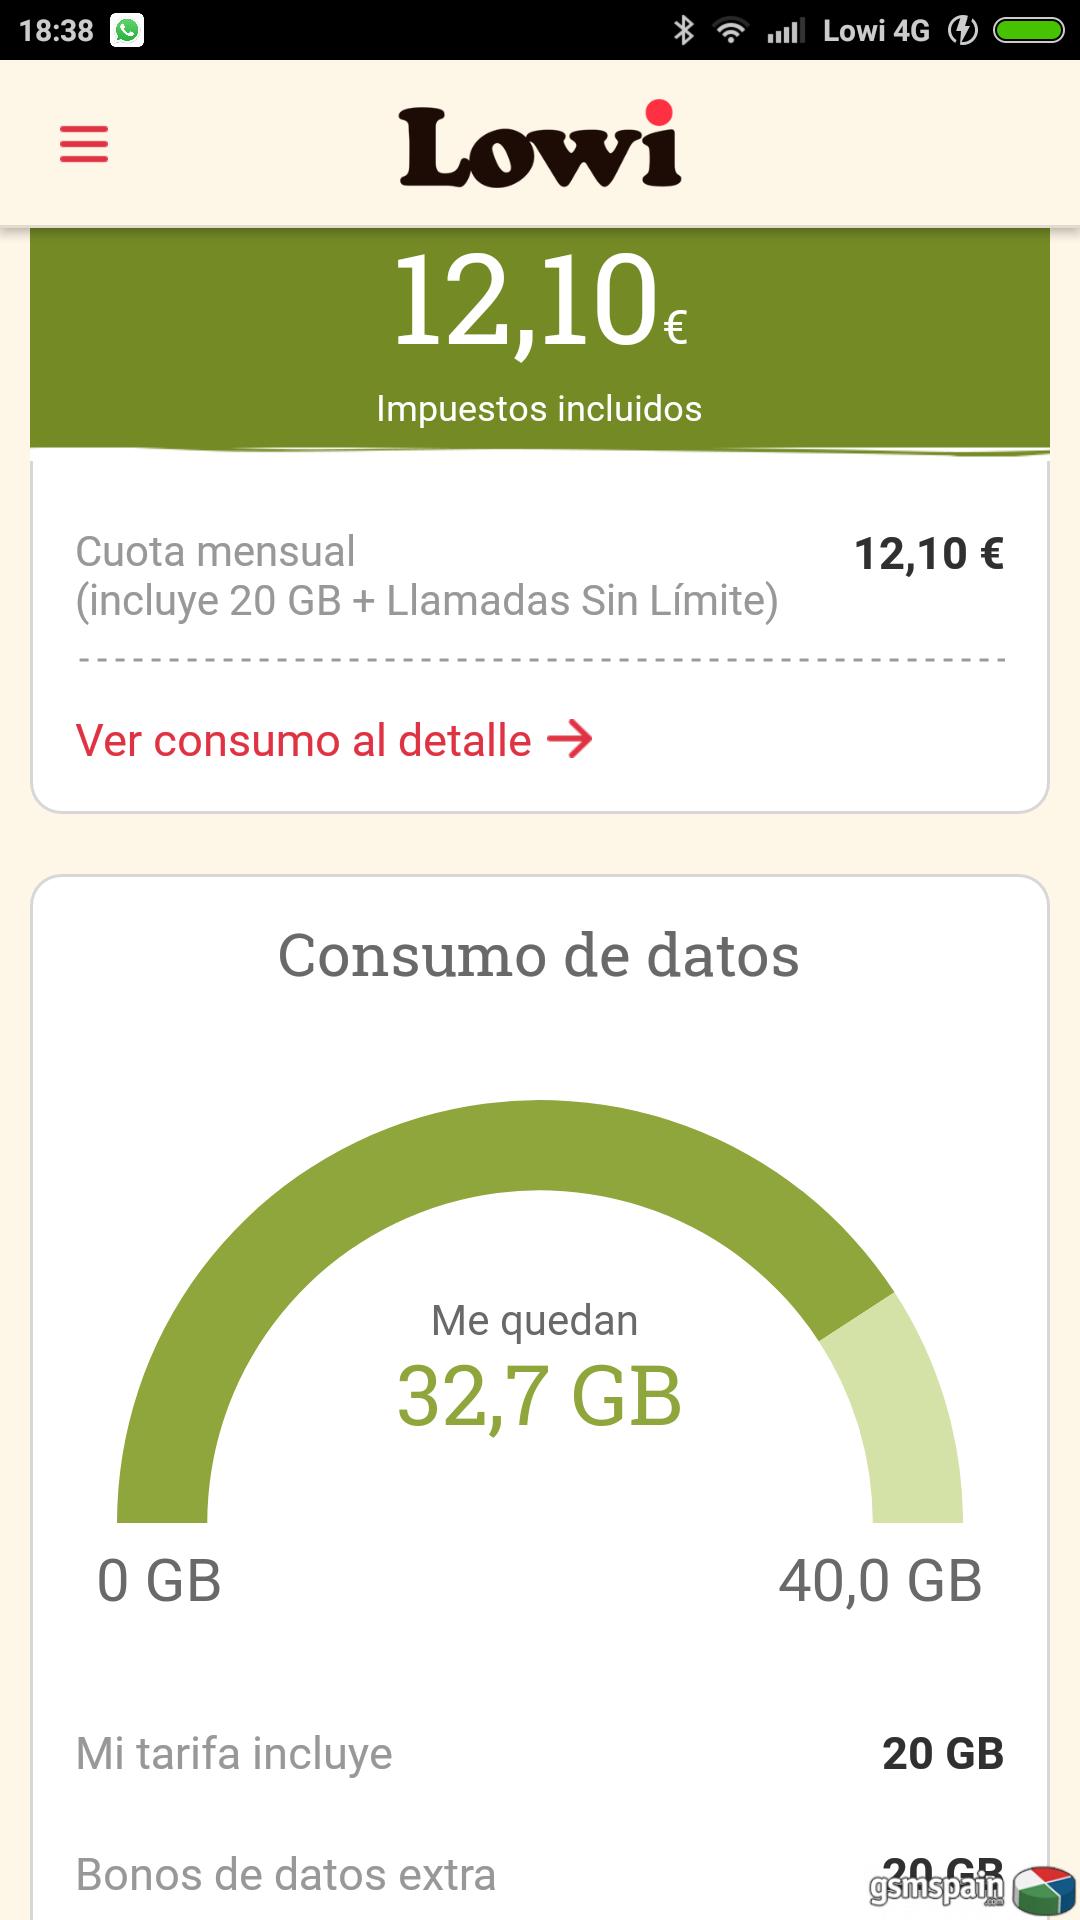 [HILO OFICIAL] 20 GB y LLAMADAS ILIMITADAS POR 15 euros